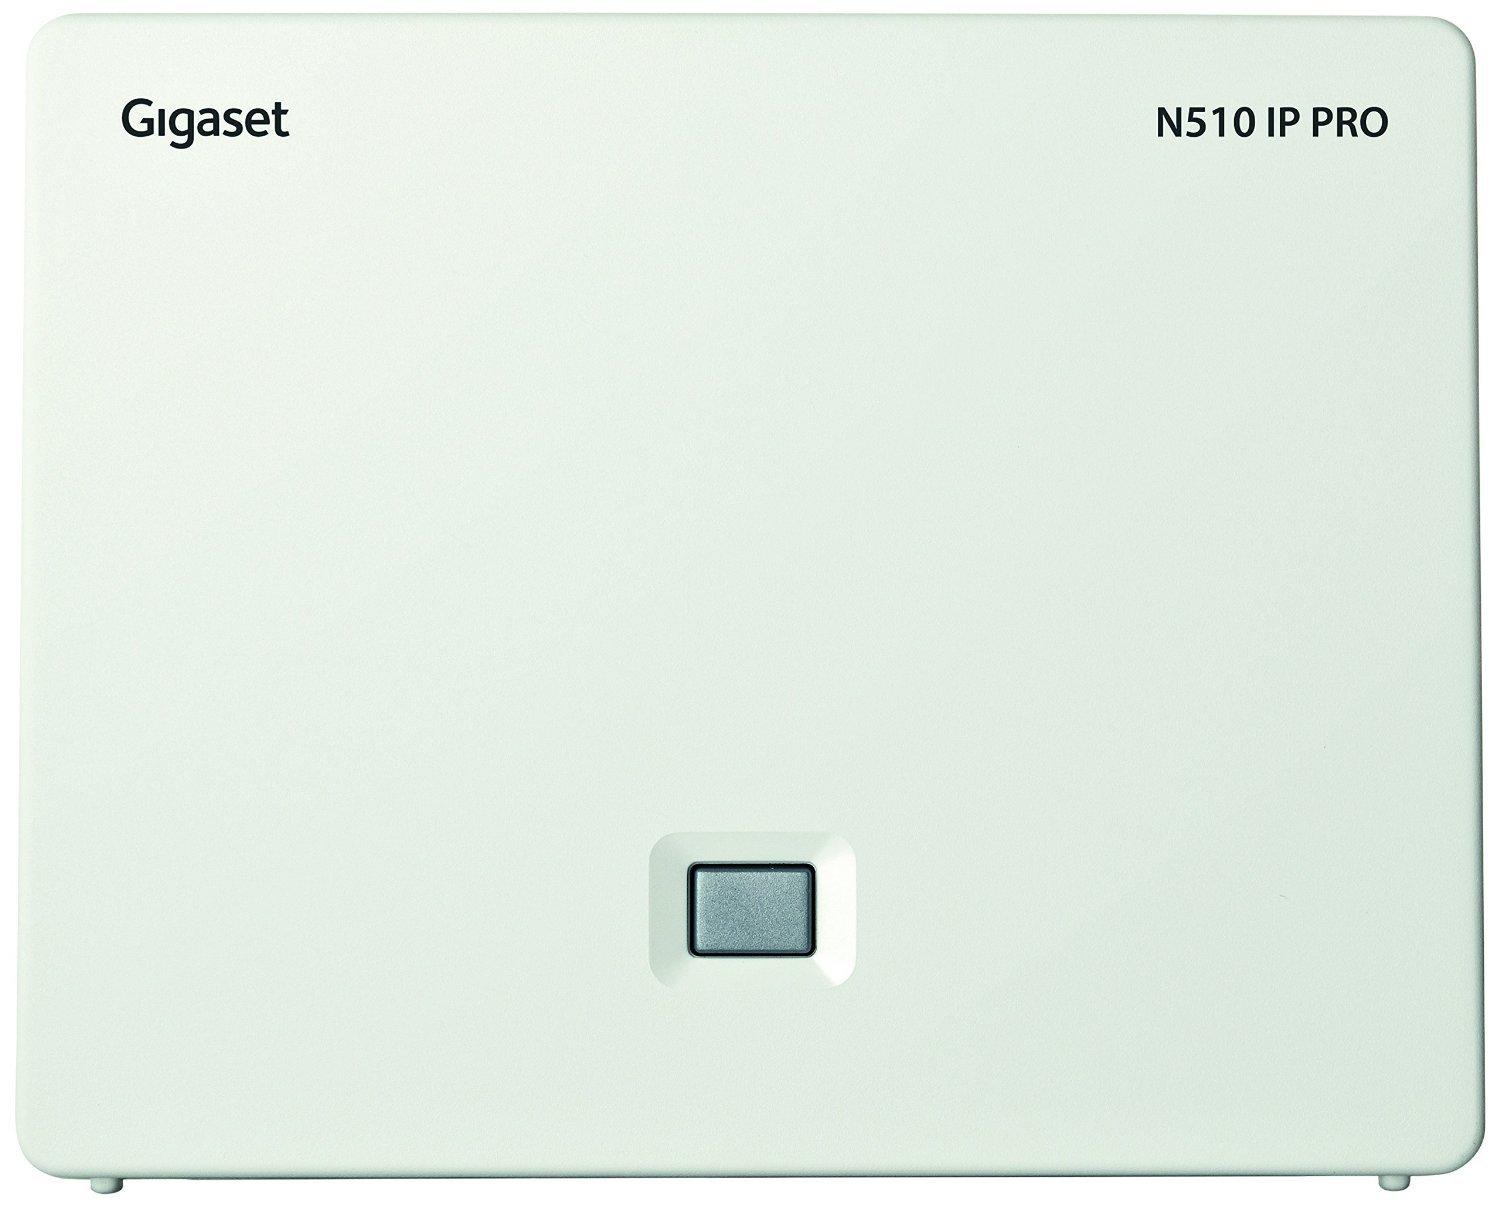 Gigaset N510 IP Base Station Front